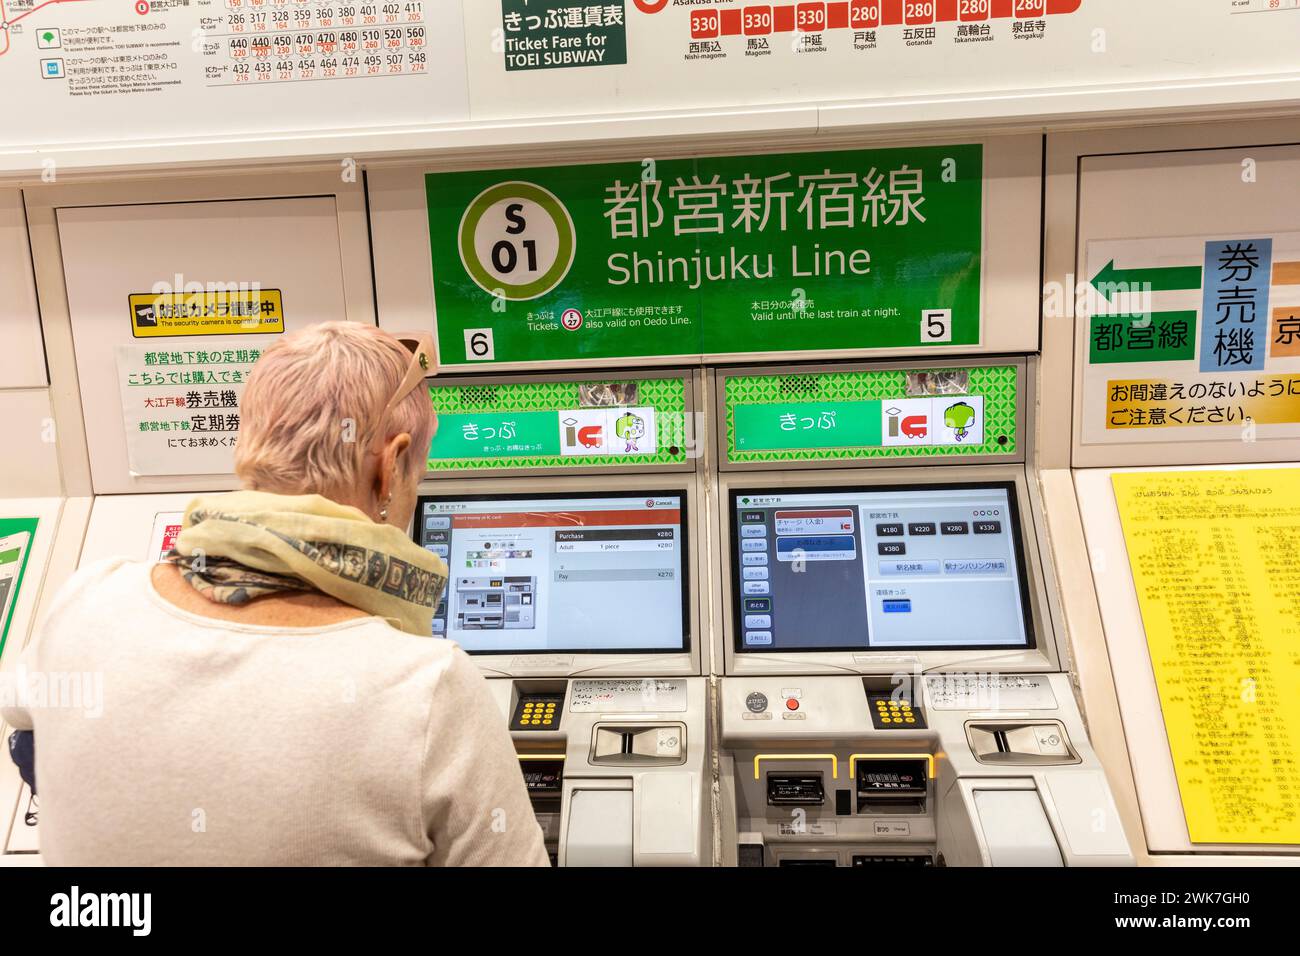 Tokyo Japon, femme occidentale, modèle libéré achète billet de train à la machine à billets pour voyager ligne de train Shinjuku, métro de Tokyo, Asie, 2023 Banque D'Images